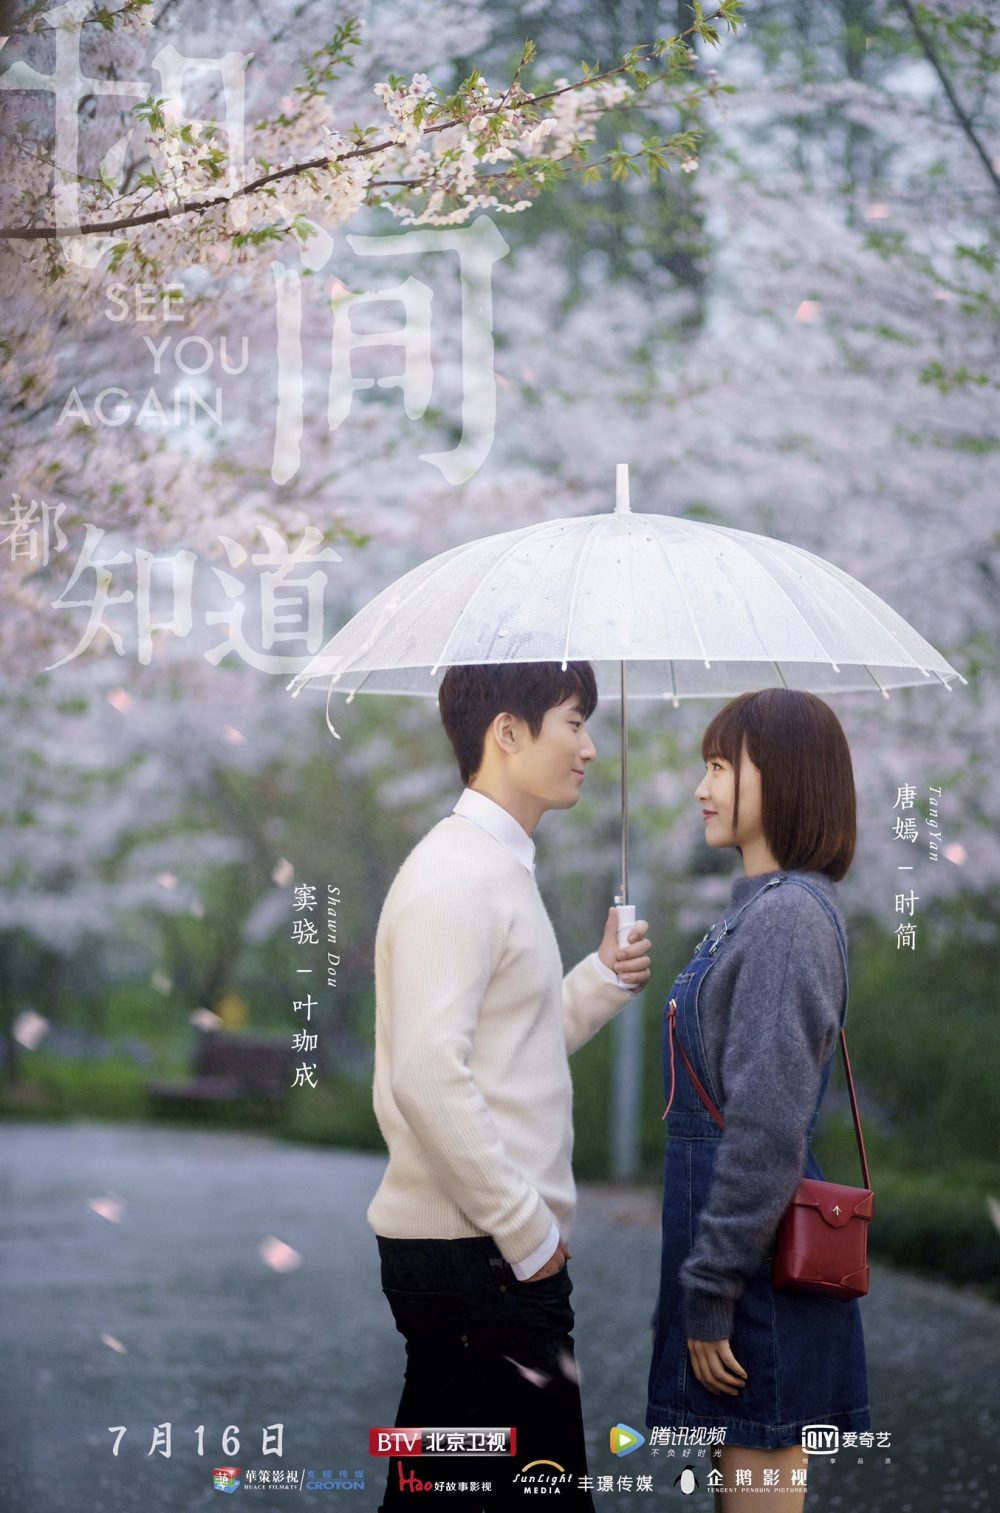 Phim xuyên ko Trung Quốc hay: Thời gian ngoan đều biết rõ - See You Again (2019)